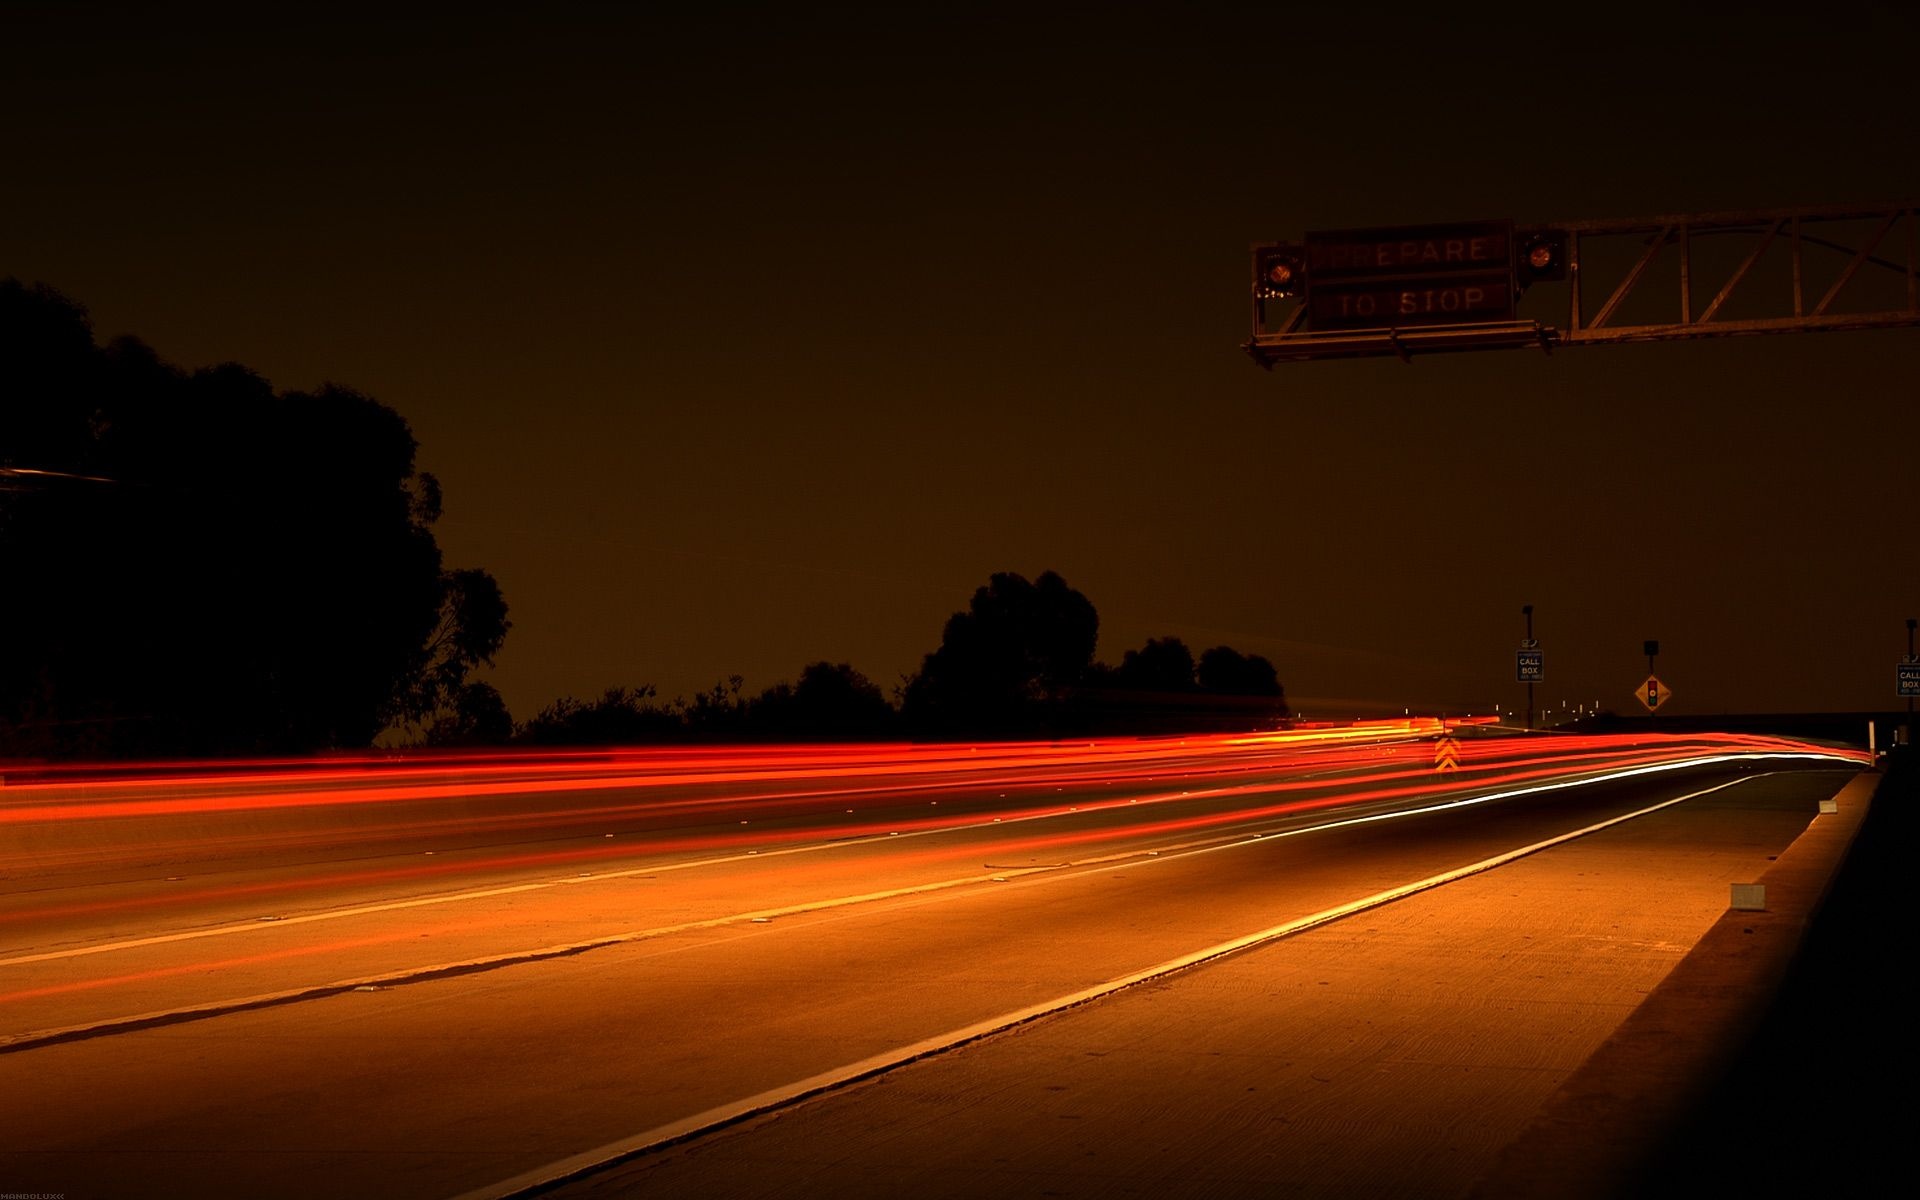 Autobahn Lights Night